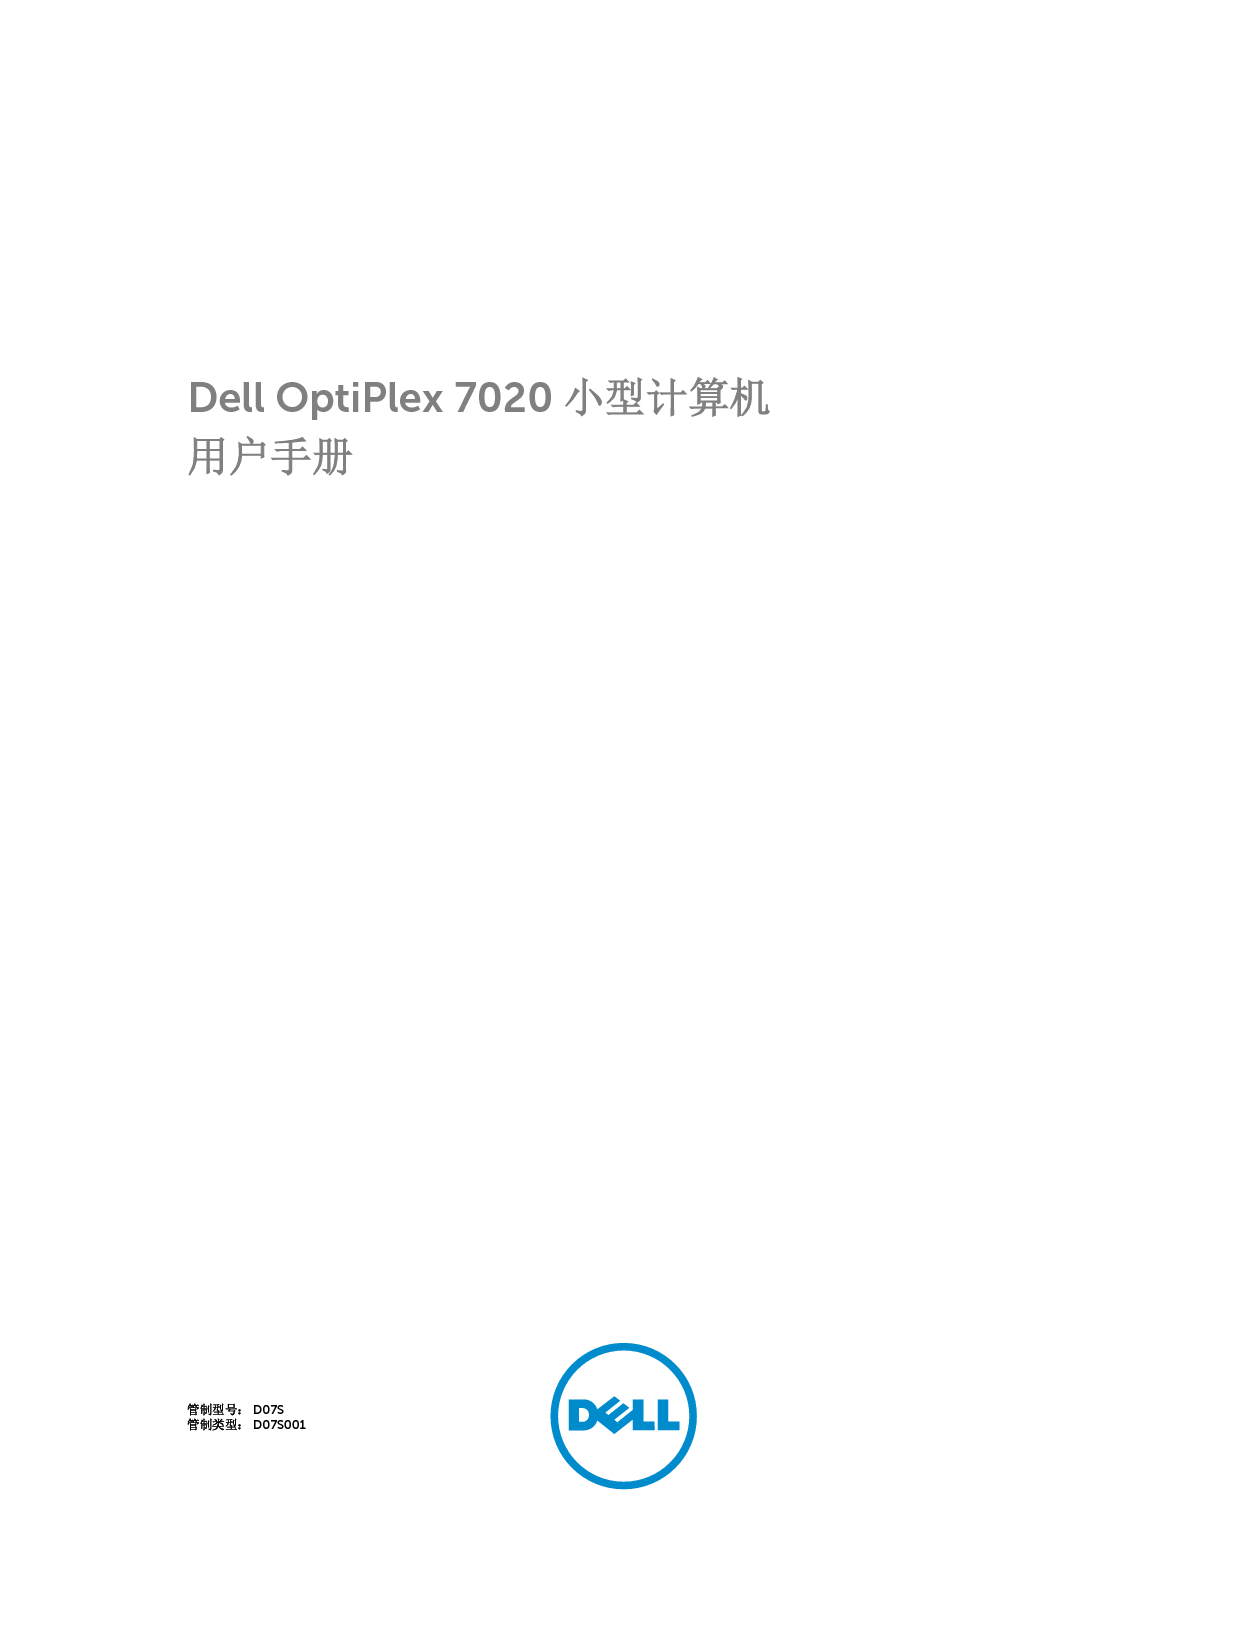 戴尔 Dell Optiplex 7020 小型 用户手册 封面